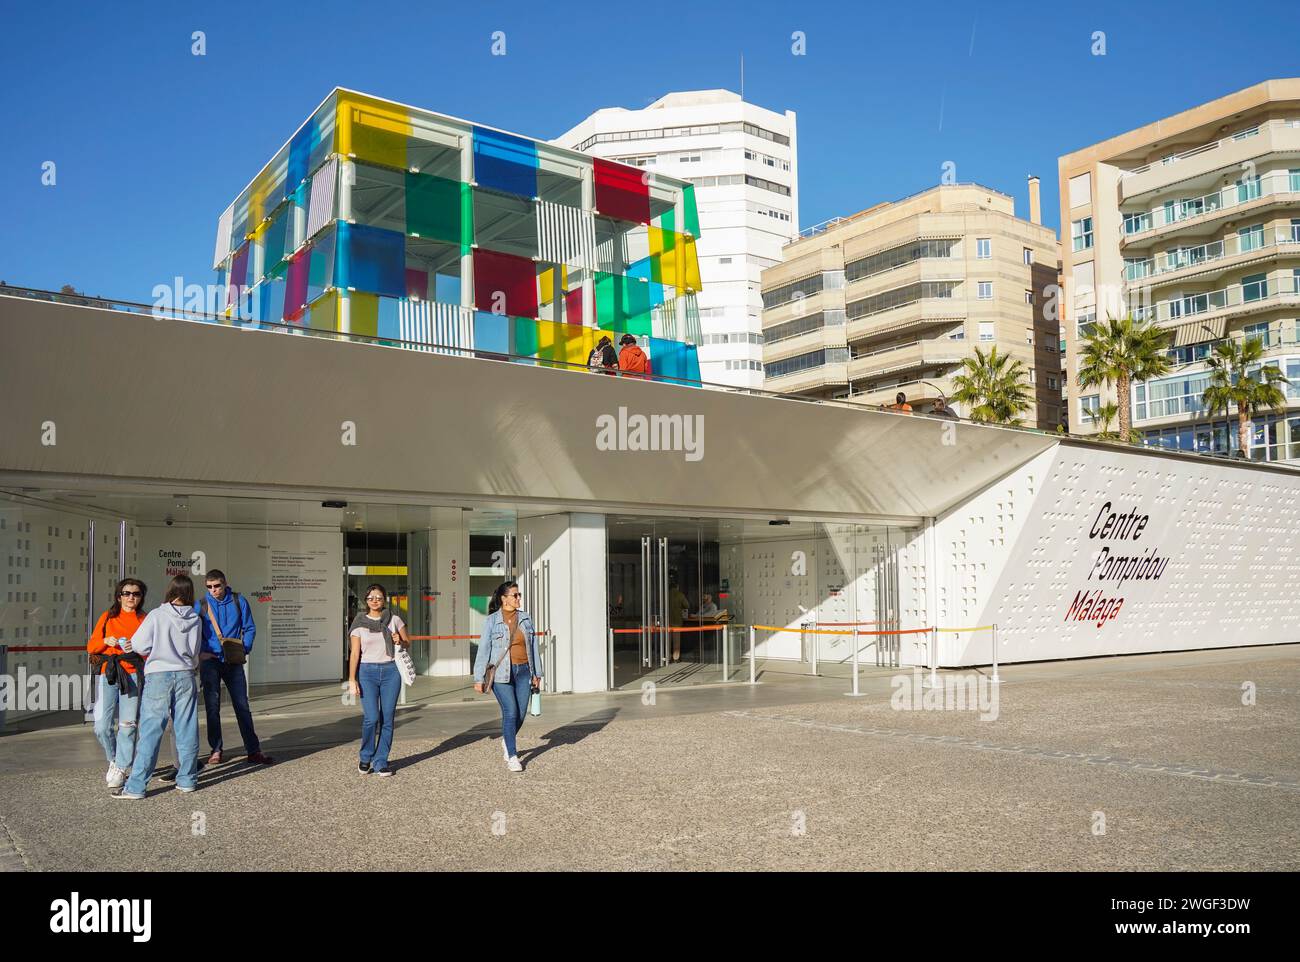 Entrée centre Pompidou Malaga, le Centre Pompidou, le cube, musée pop up, à Muelle uno, port de Malaga, Andalousie, Espagne. Banque D'Images